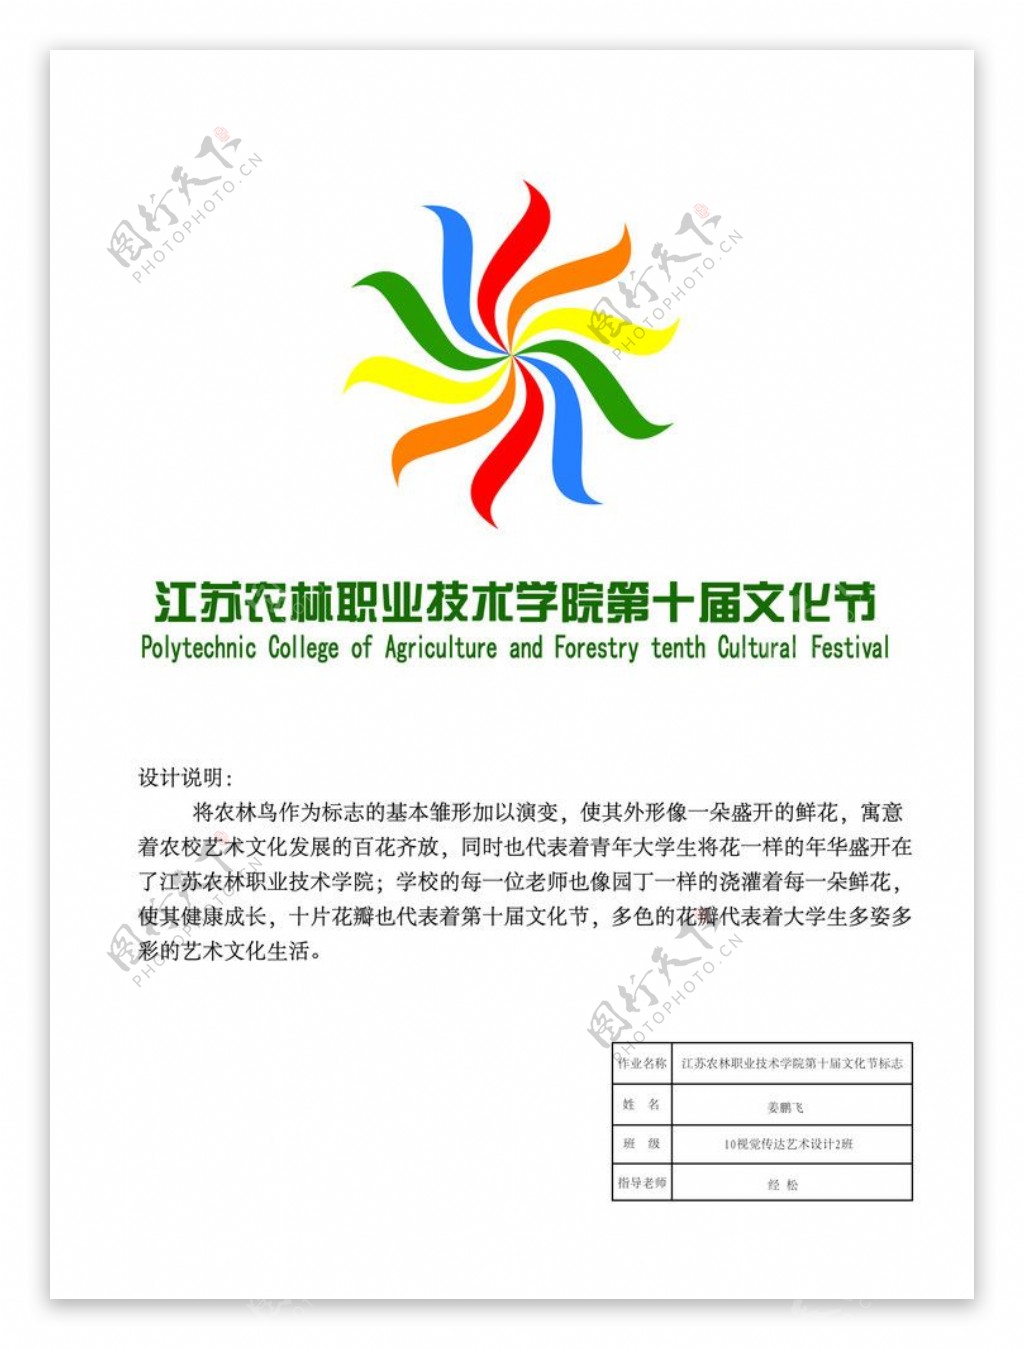 江苏农林职业技术学院第十届文化节标志设计图片